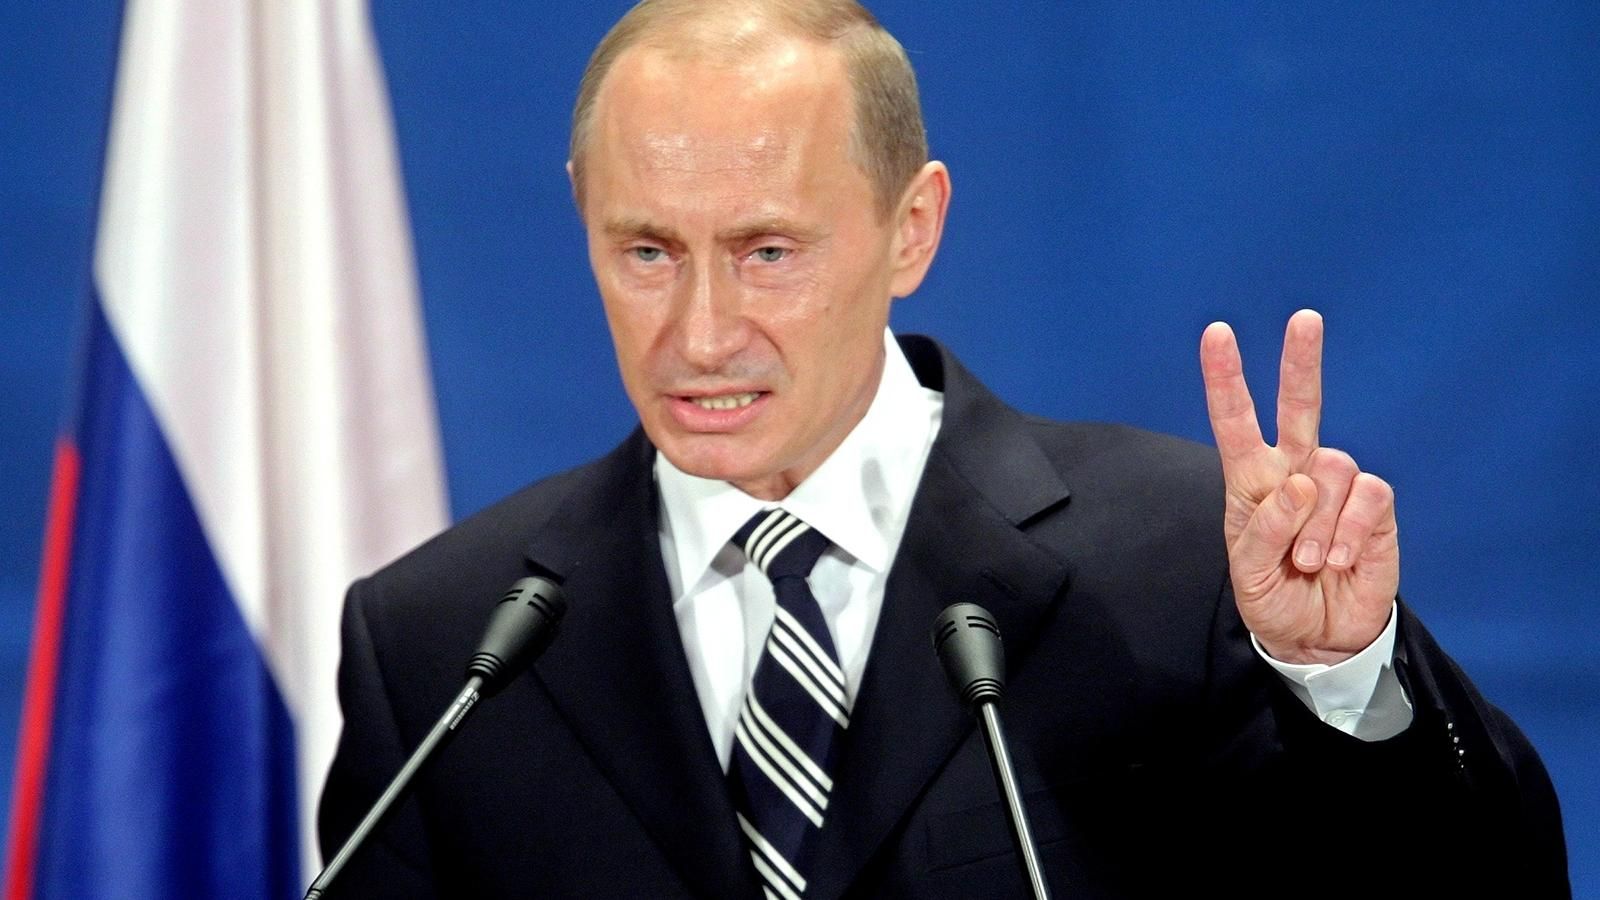 Снятие санкций станет плохим сигналом Европы Путину, — RFERL